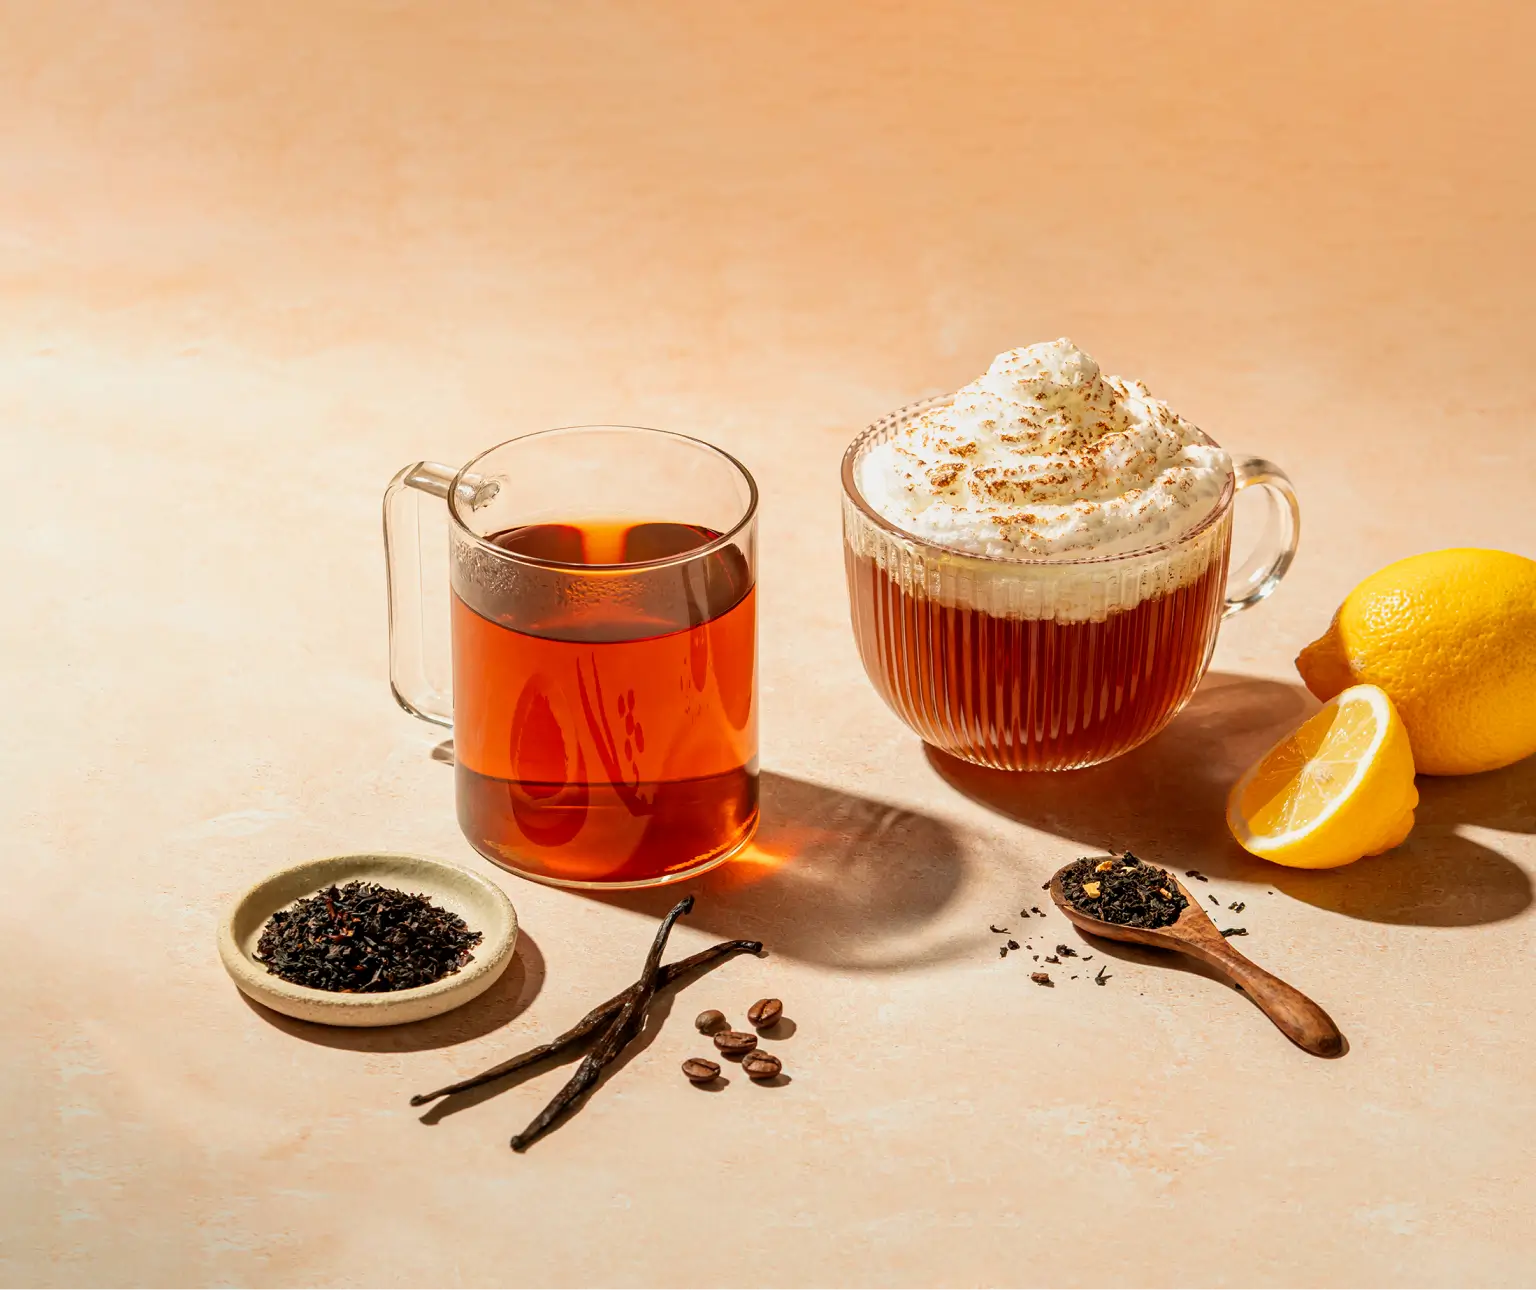 Klicken Sie auf "Jetzt entdecken", um unsere Gourmet-Tees zu entdecken